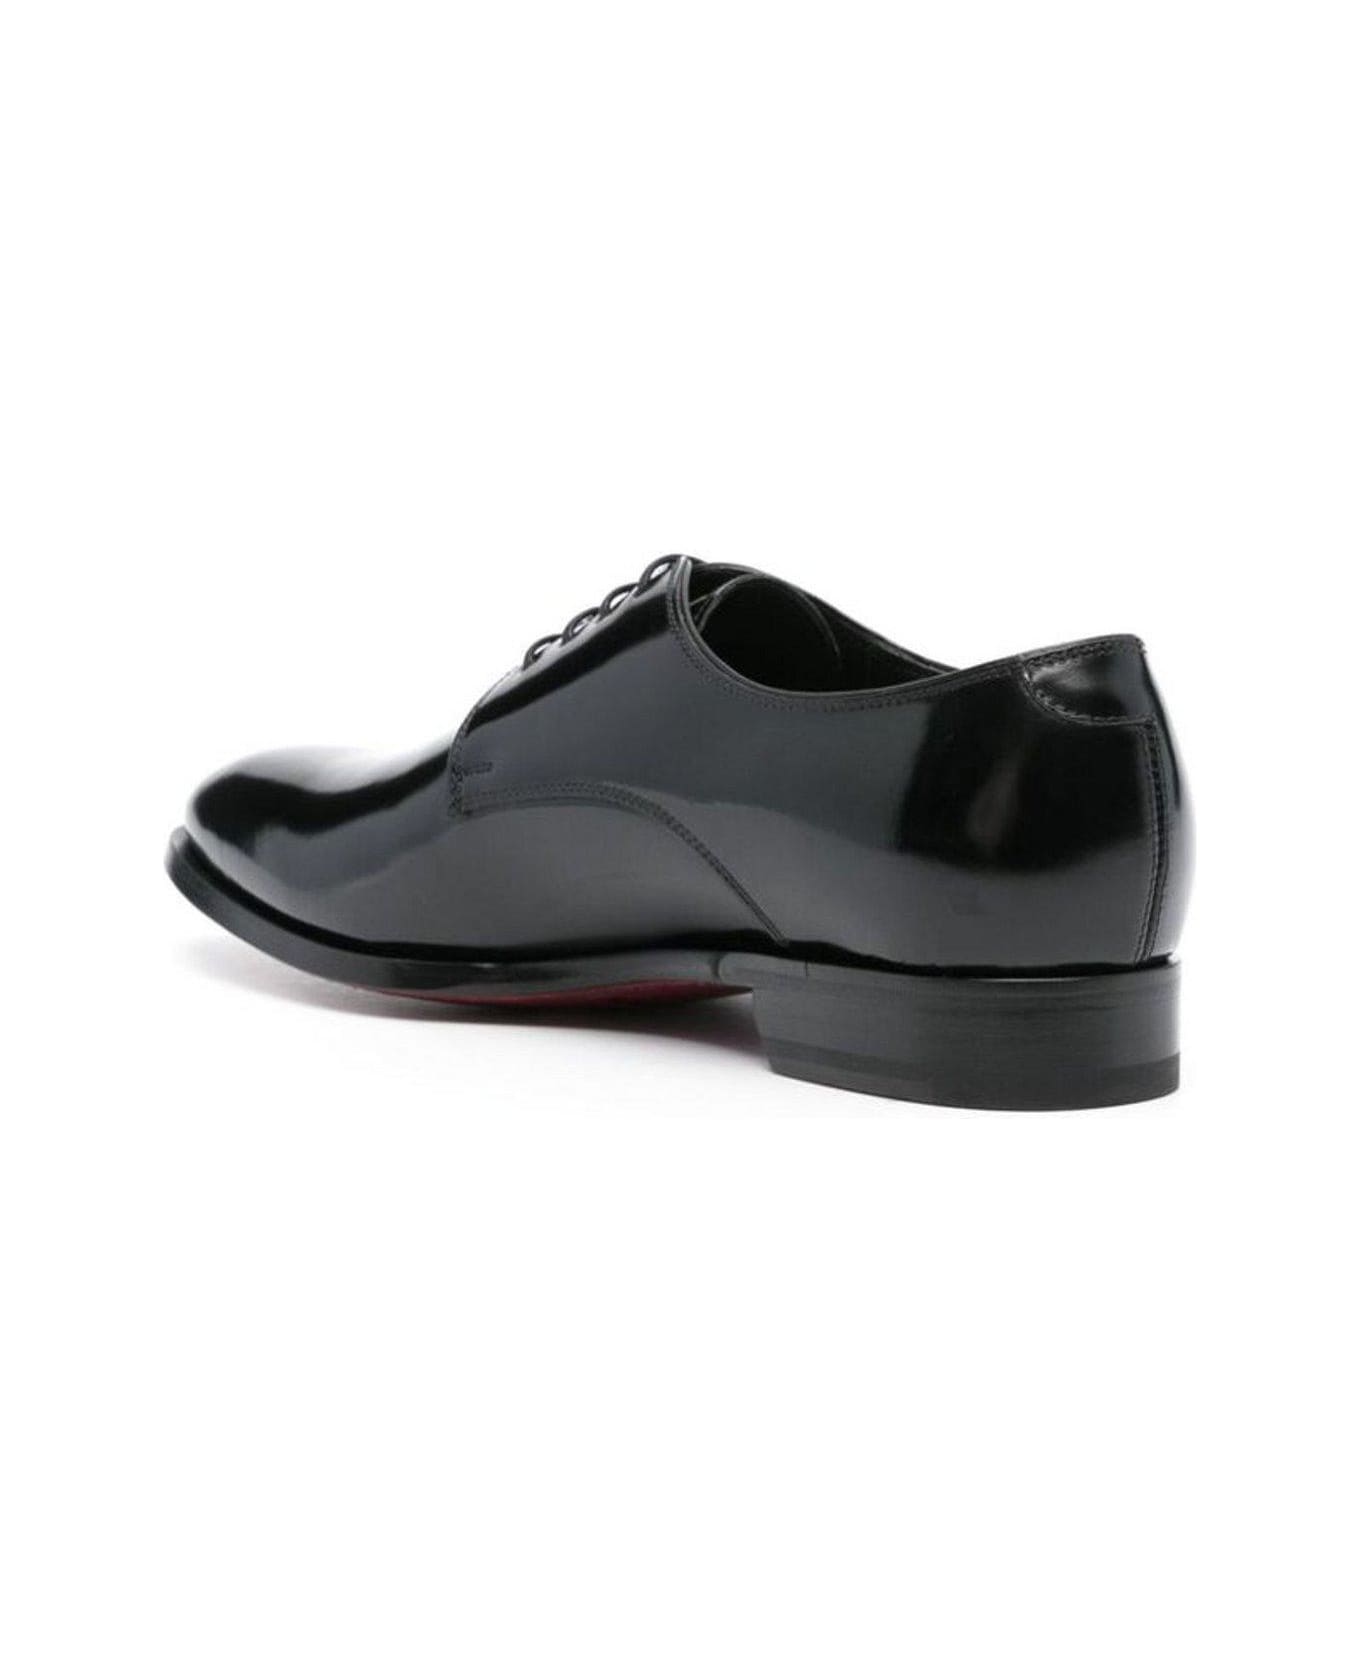 Tagliatore Evan Lace-up Derby Shoes - BLACK